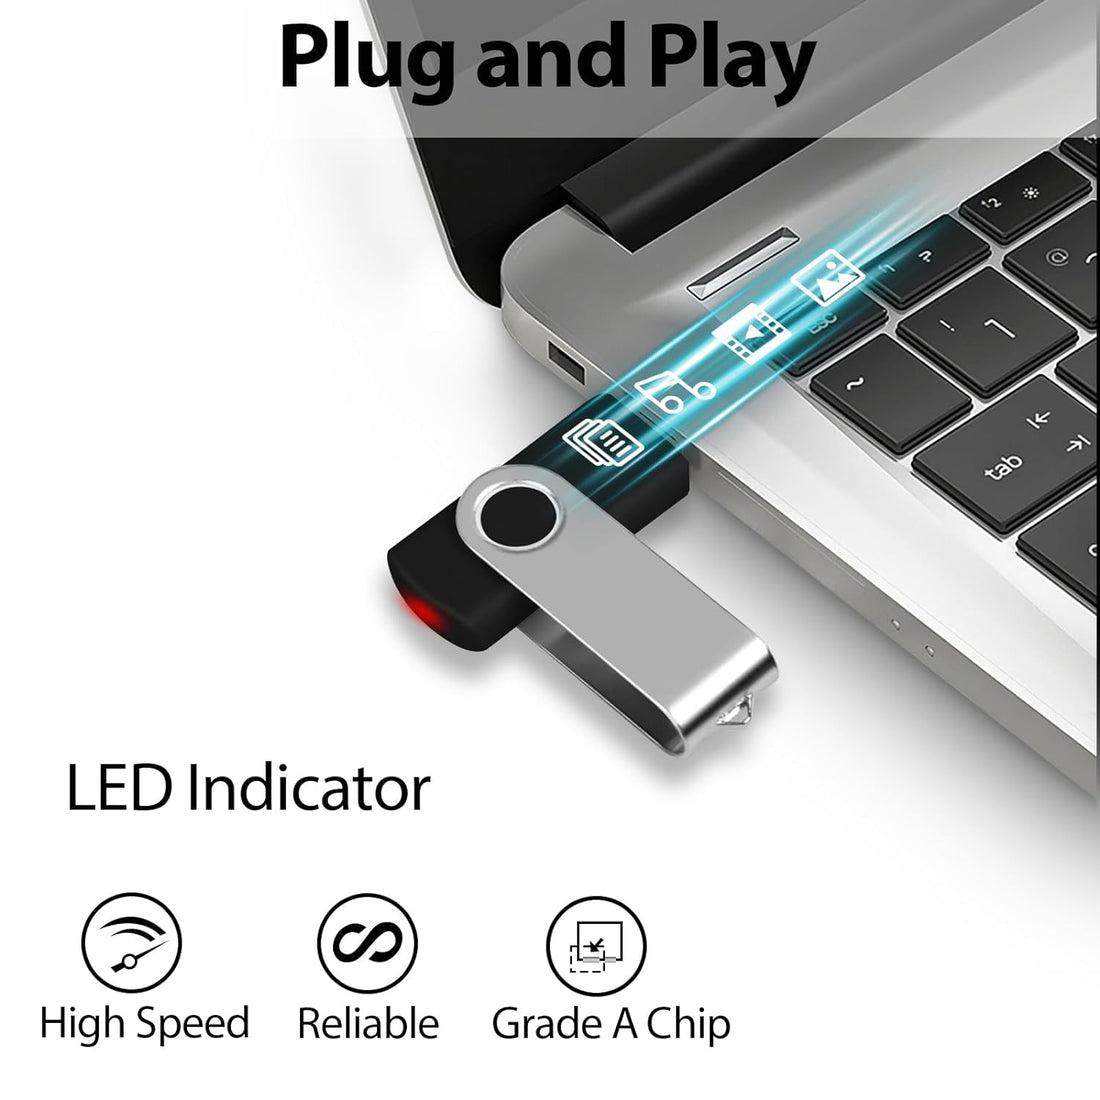 AreTop 16GB Flash Drives 20 Pack, USB 2.0 Pendrive Bulk USB Drives 20 Pack Flash Drives Bulk Memory Stick USB 20 Pack Thumb Drives Bulk (20Pack 16GB, Multicolors)